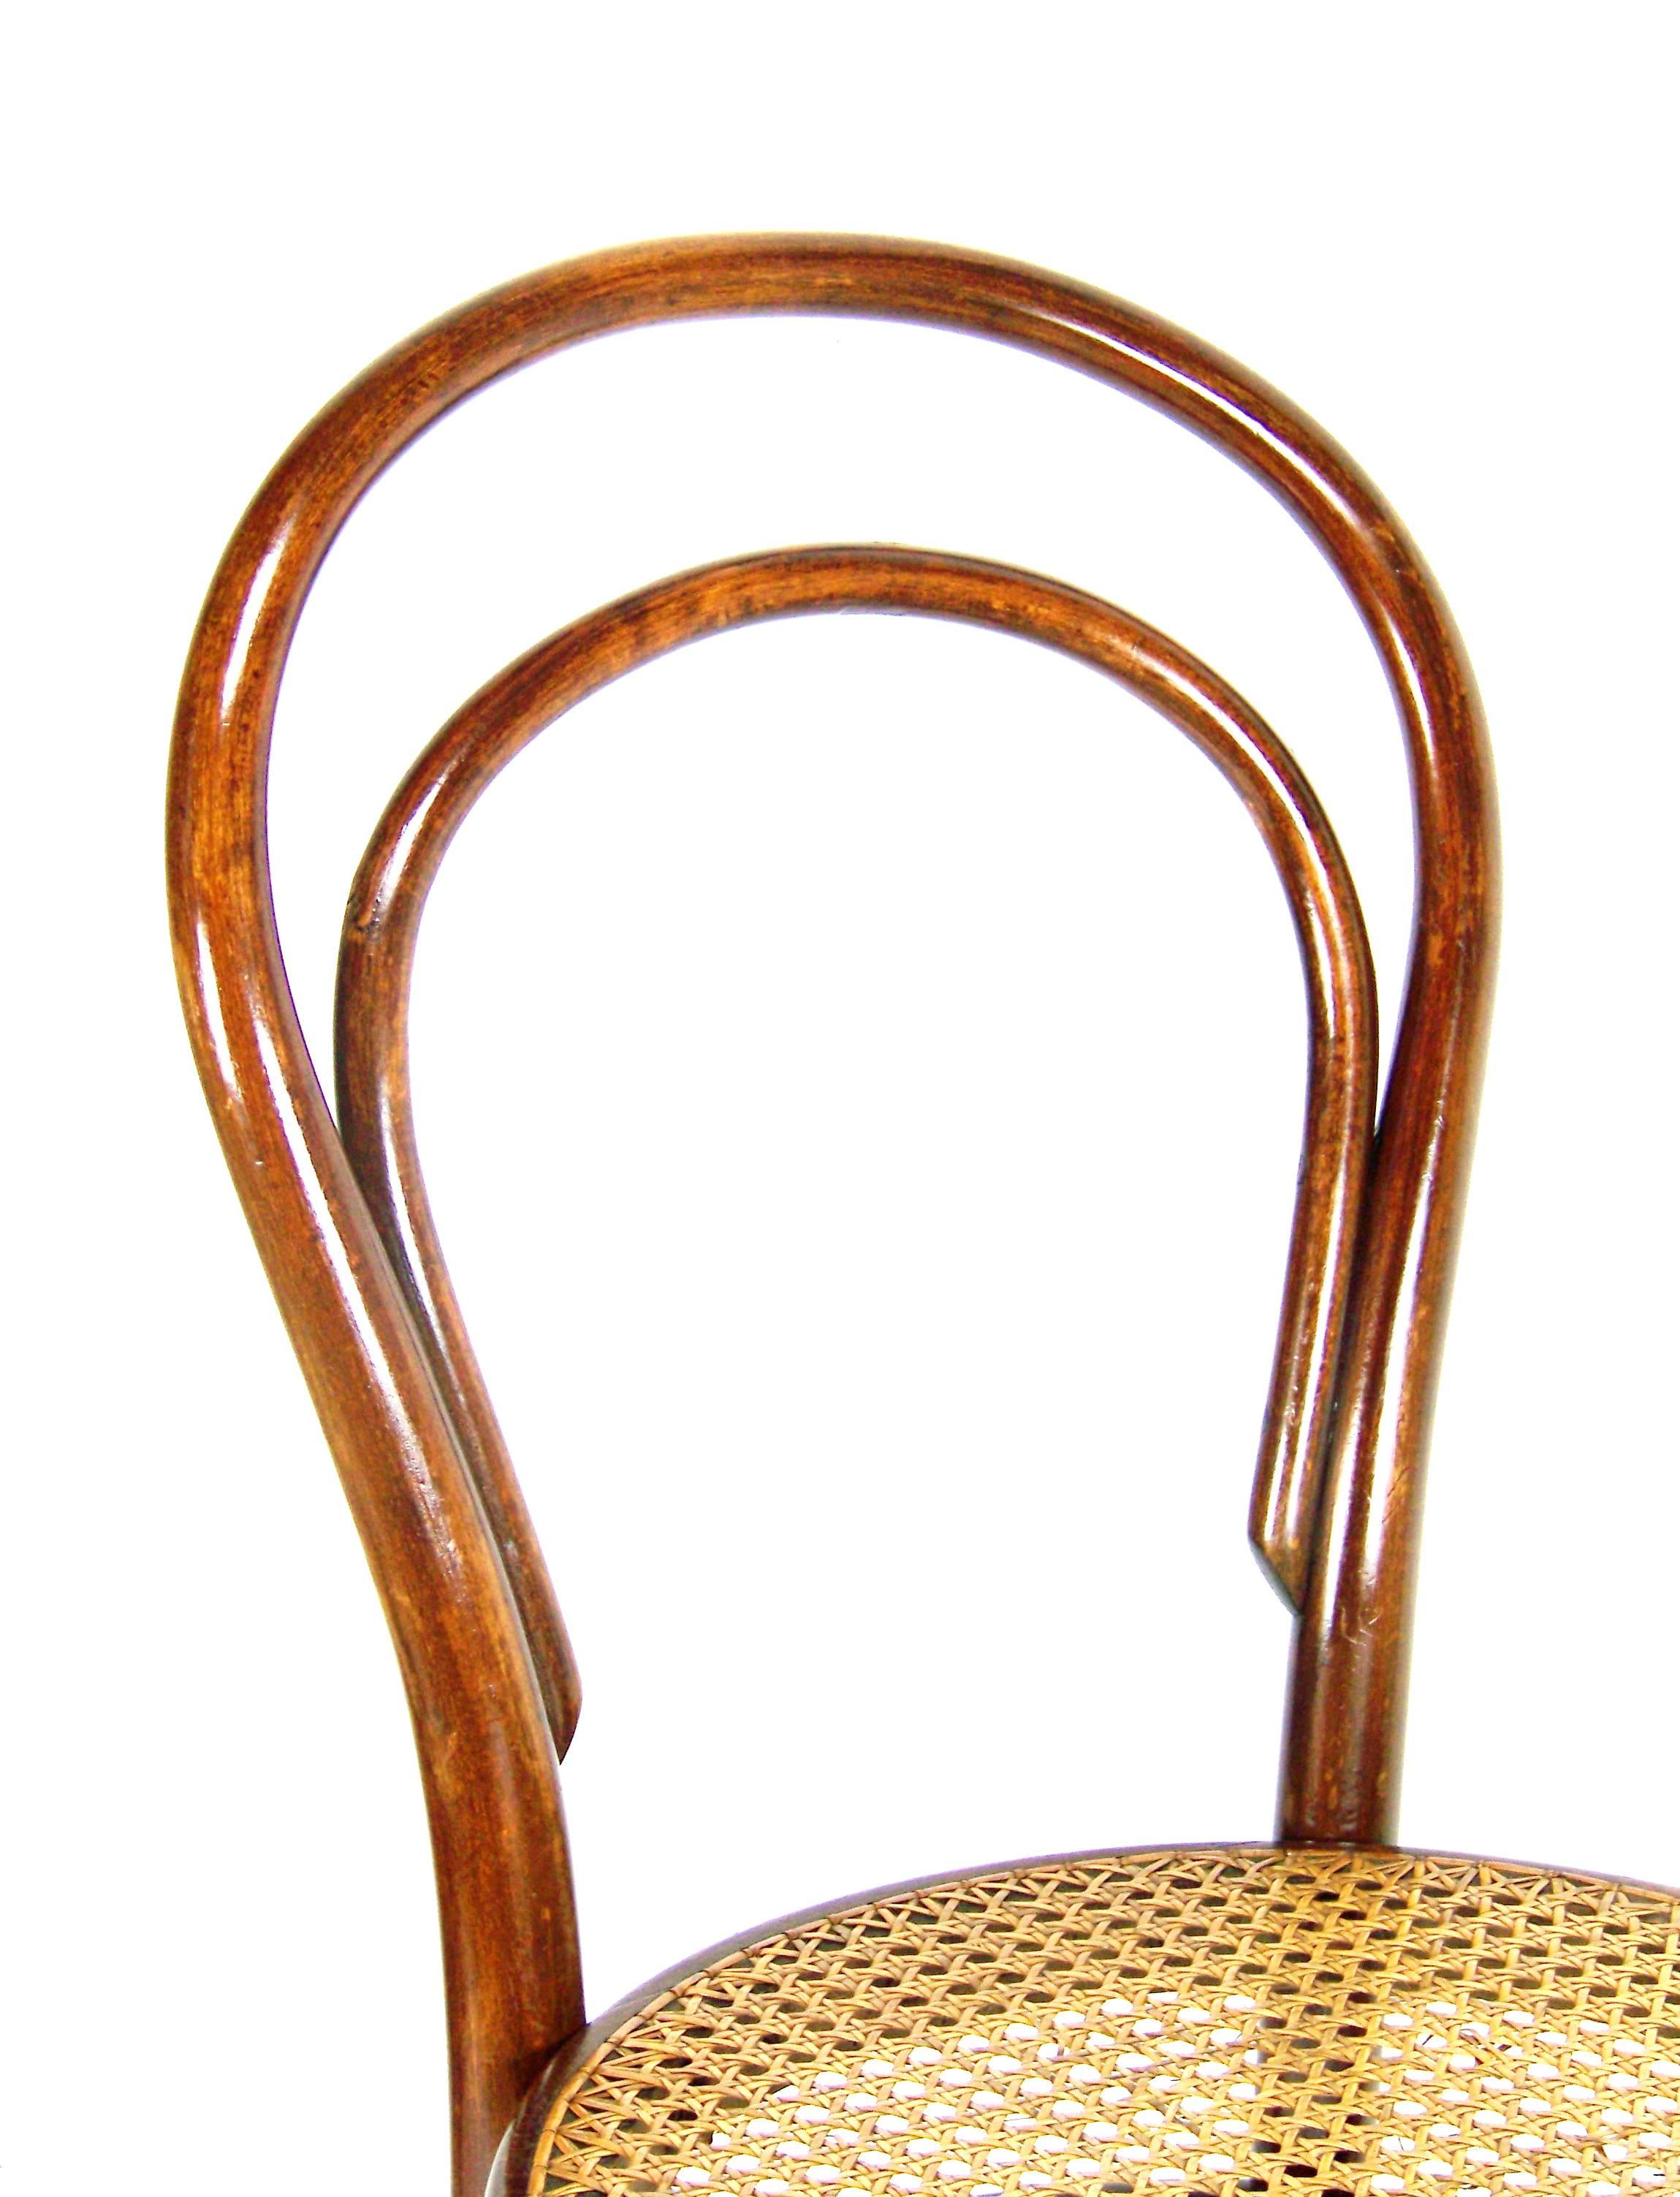 Austrian Viennese Bentwood Chair Thonet Nr. 14, circa 1887-1910